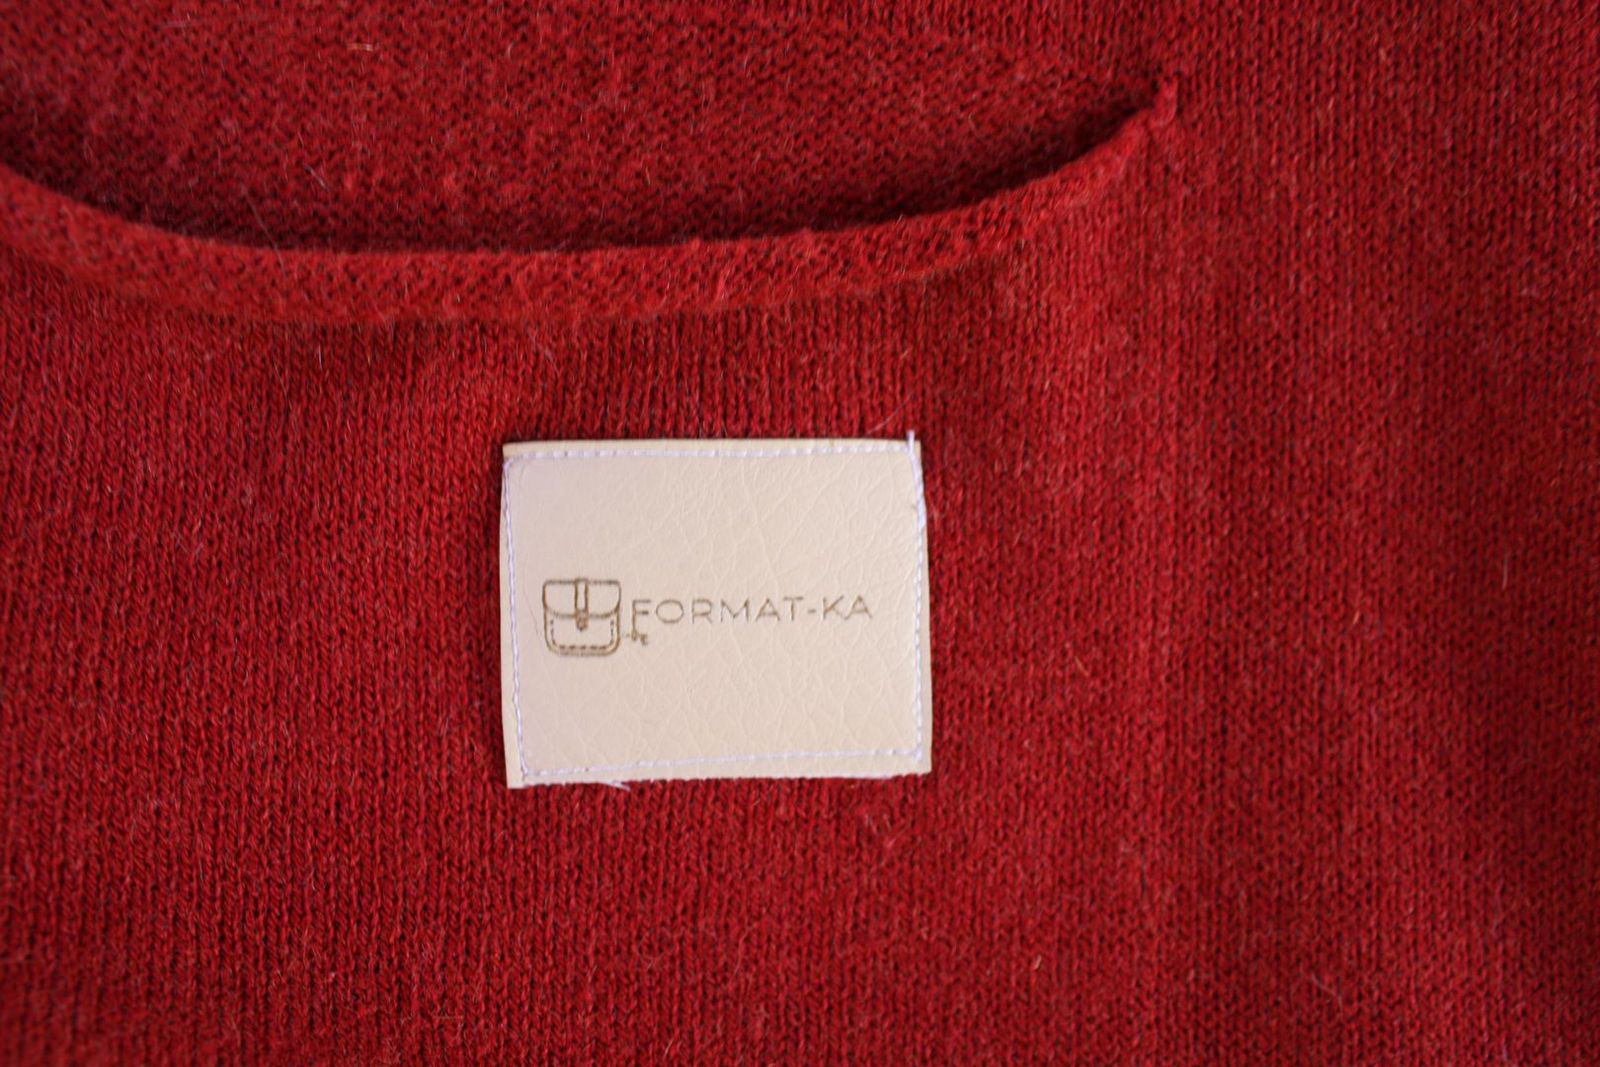 metka format-ki na rudej kieszeni na elemencie patchworkowego koca